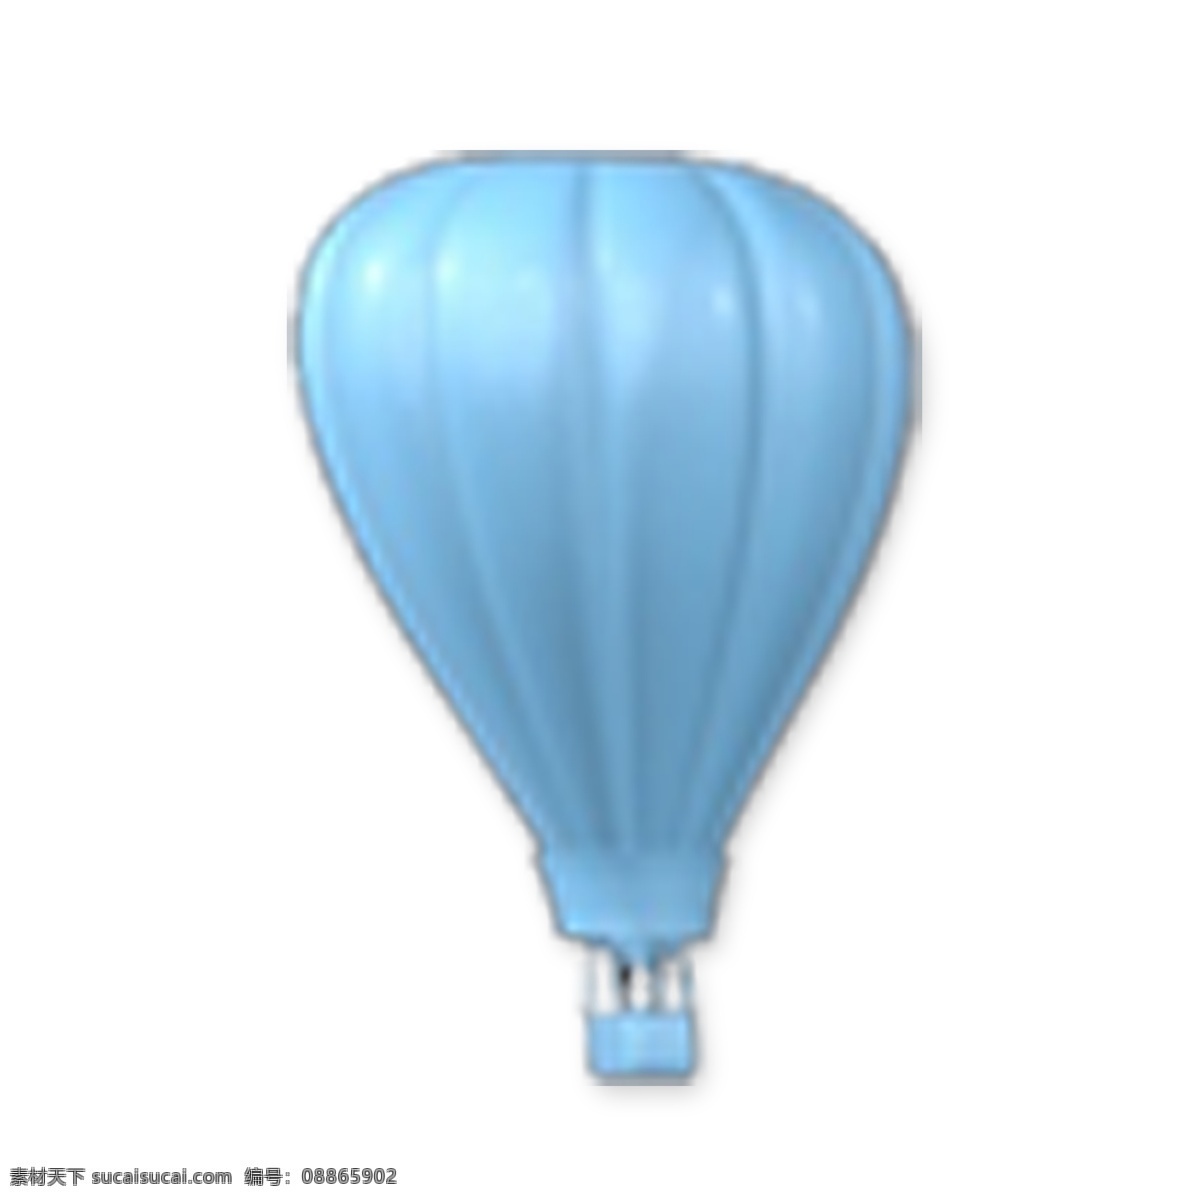 蓝色热气球 热气球 节日装饰 电商 淘宝 天猫 卡通插图 创意卡通下载 插图 png图下载